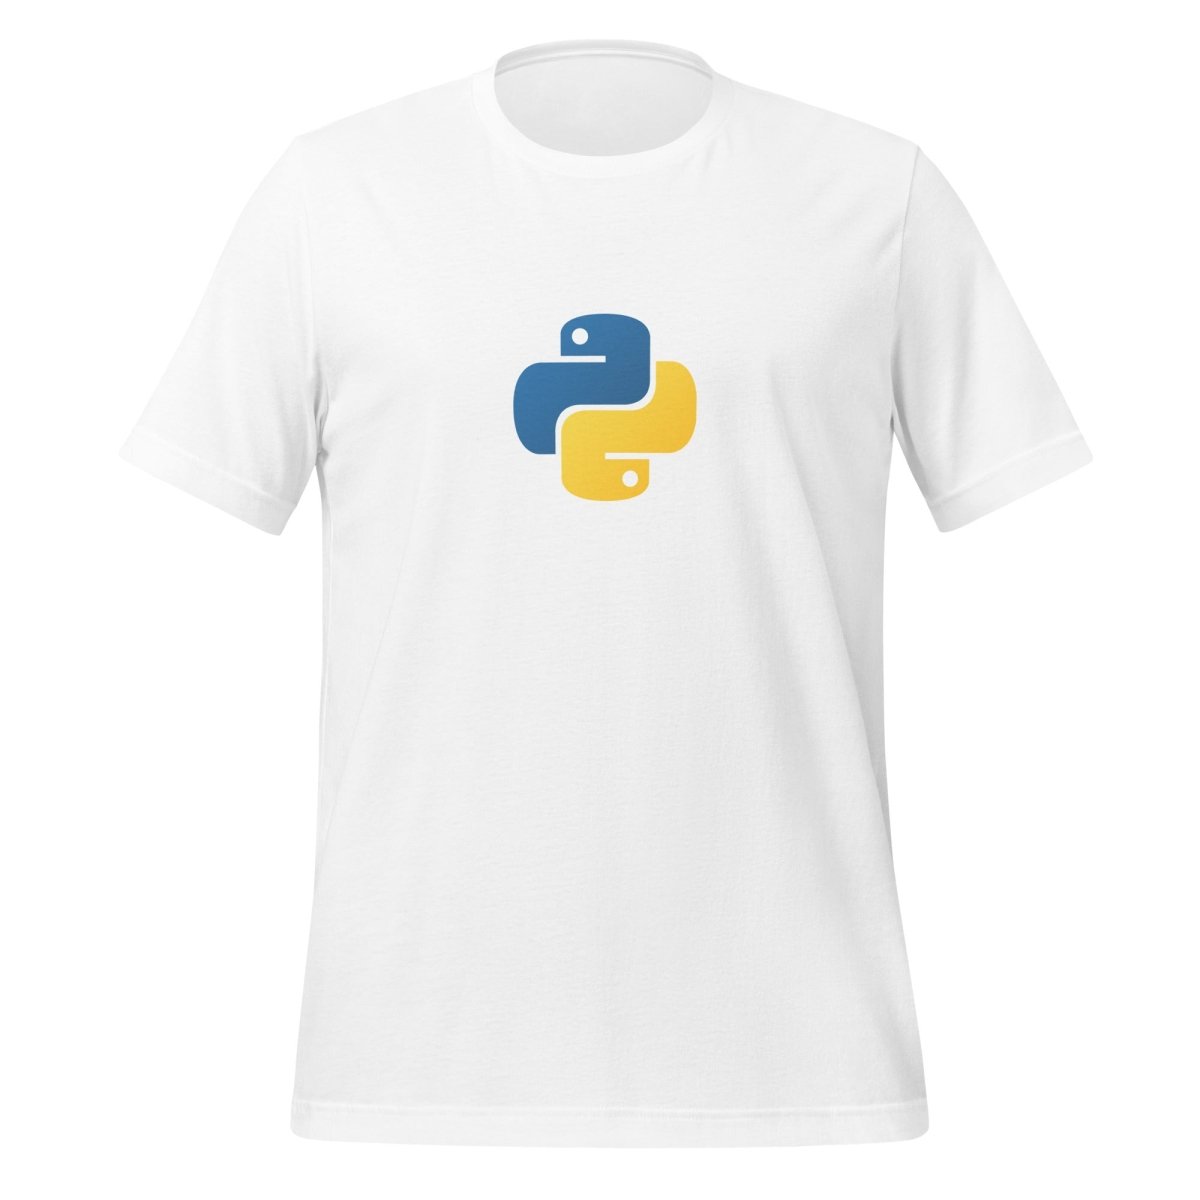 Python Small Icon T - Shirt (unisex) - White - AI Store